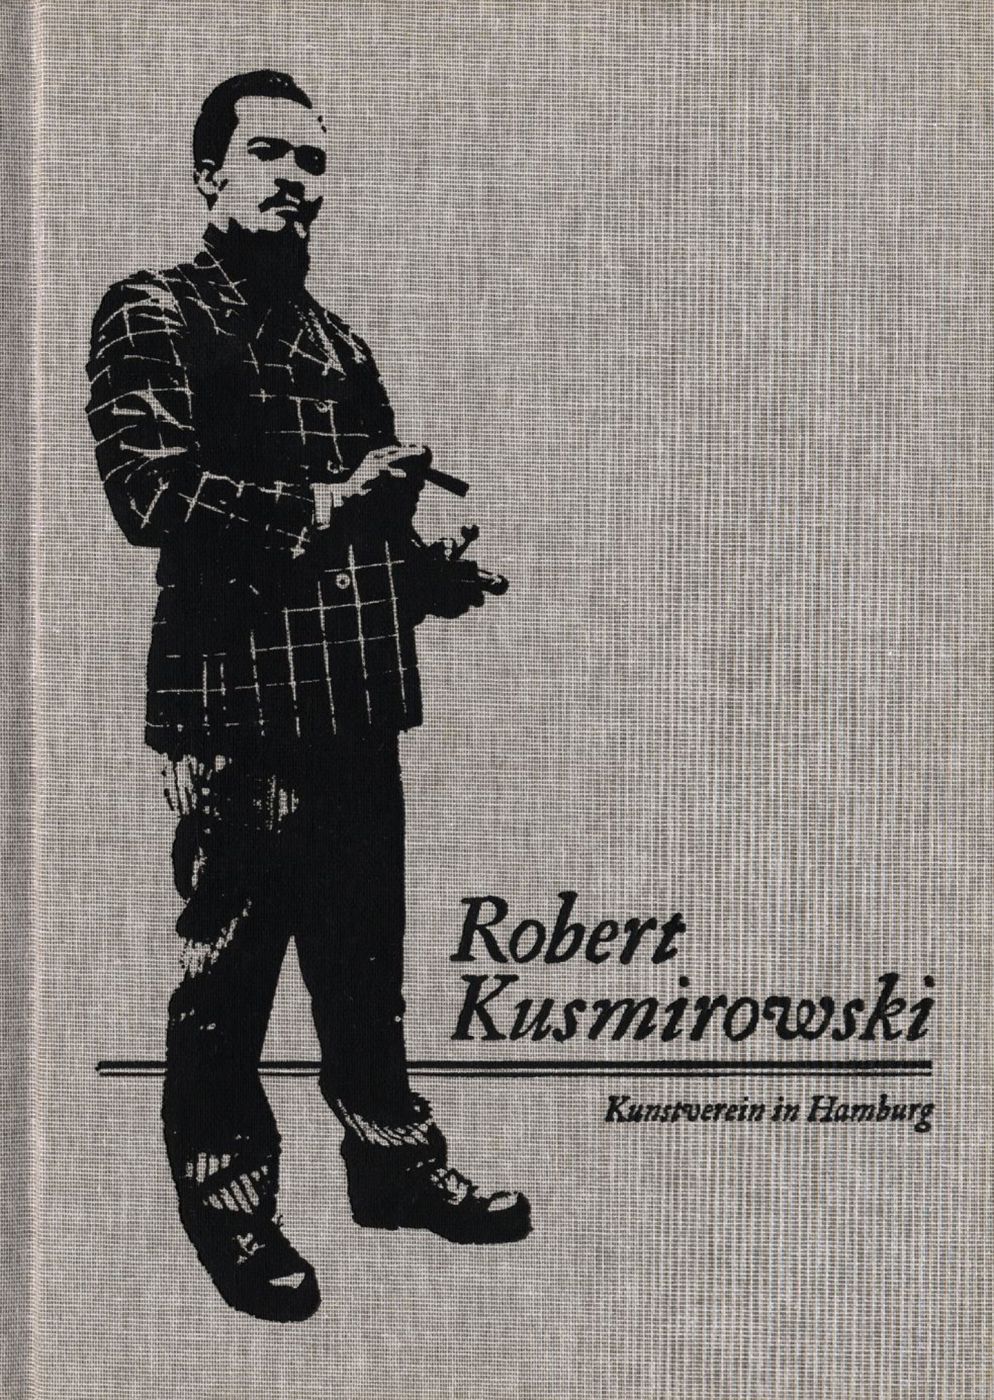 Robert Kusmirowski (Kunstverein in Hamburg)